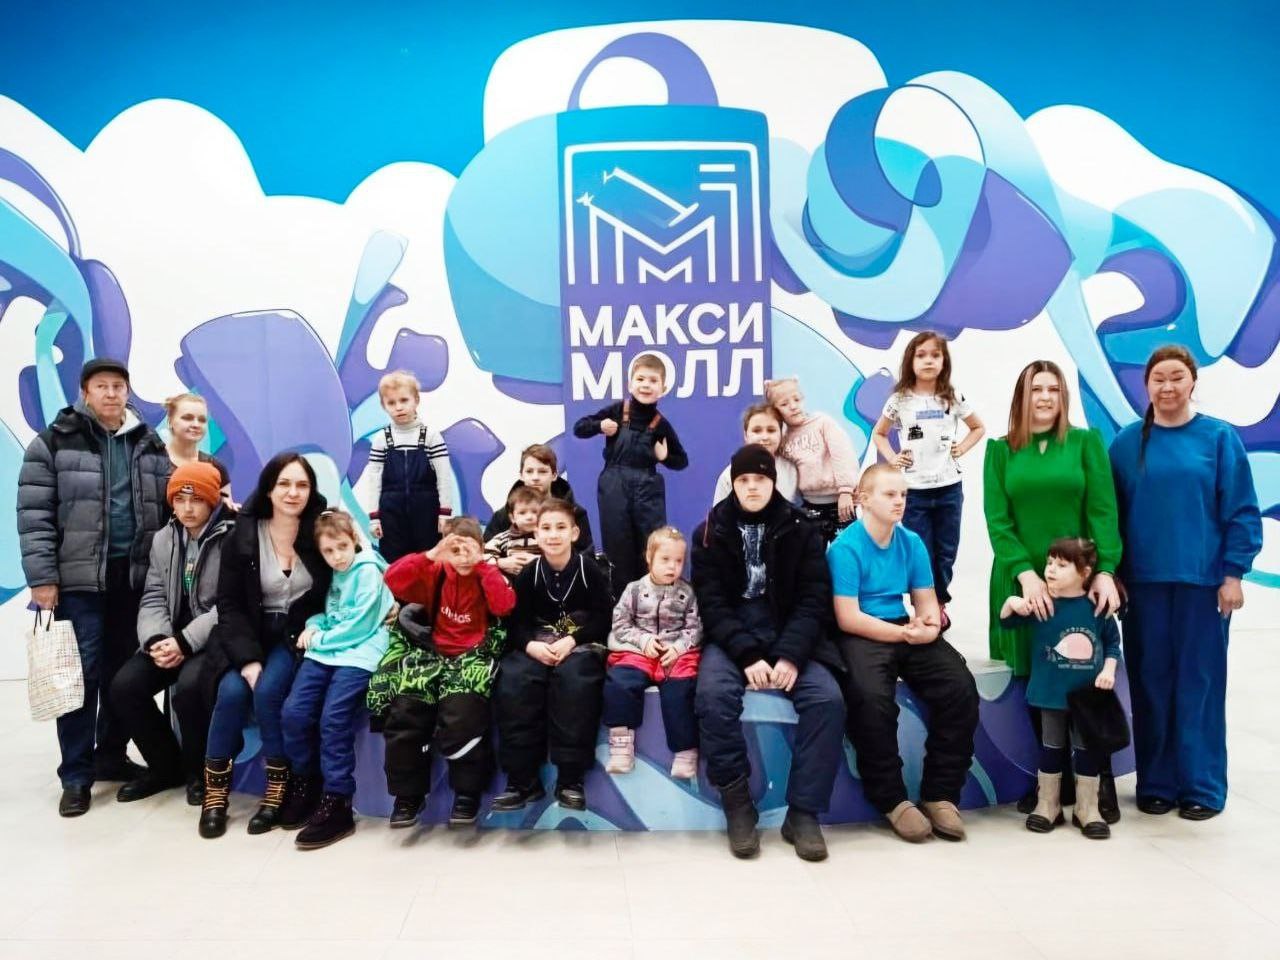 В торговом центре «Макси Молл» прошел социальный показ мультфильма для детей с инвалидностью